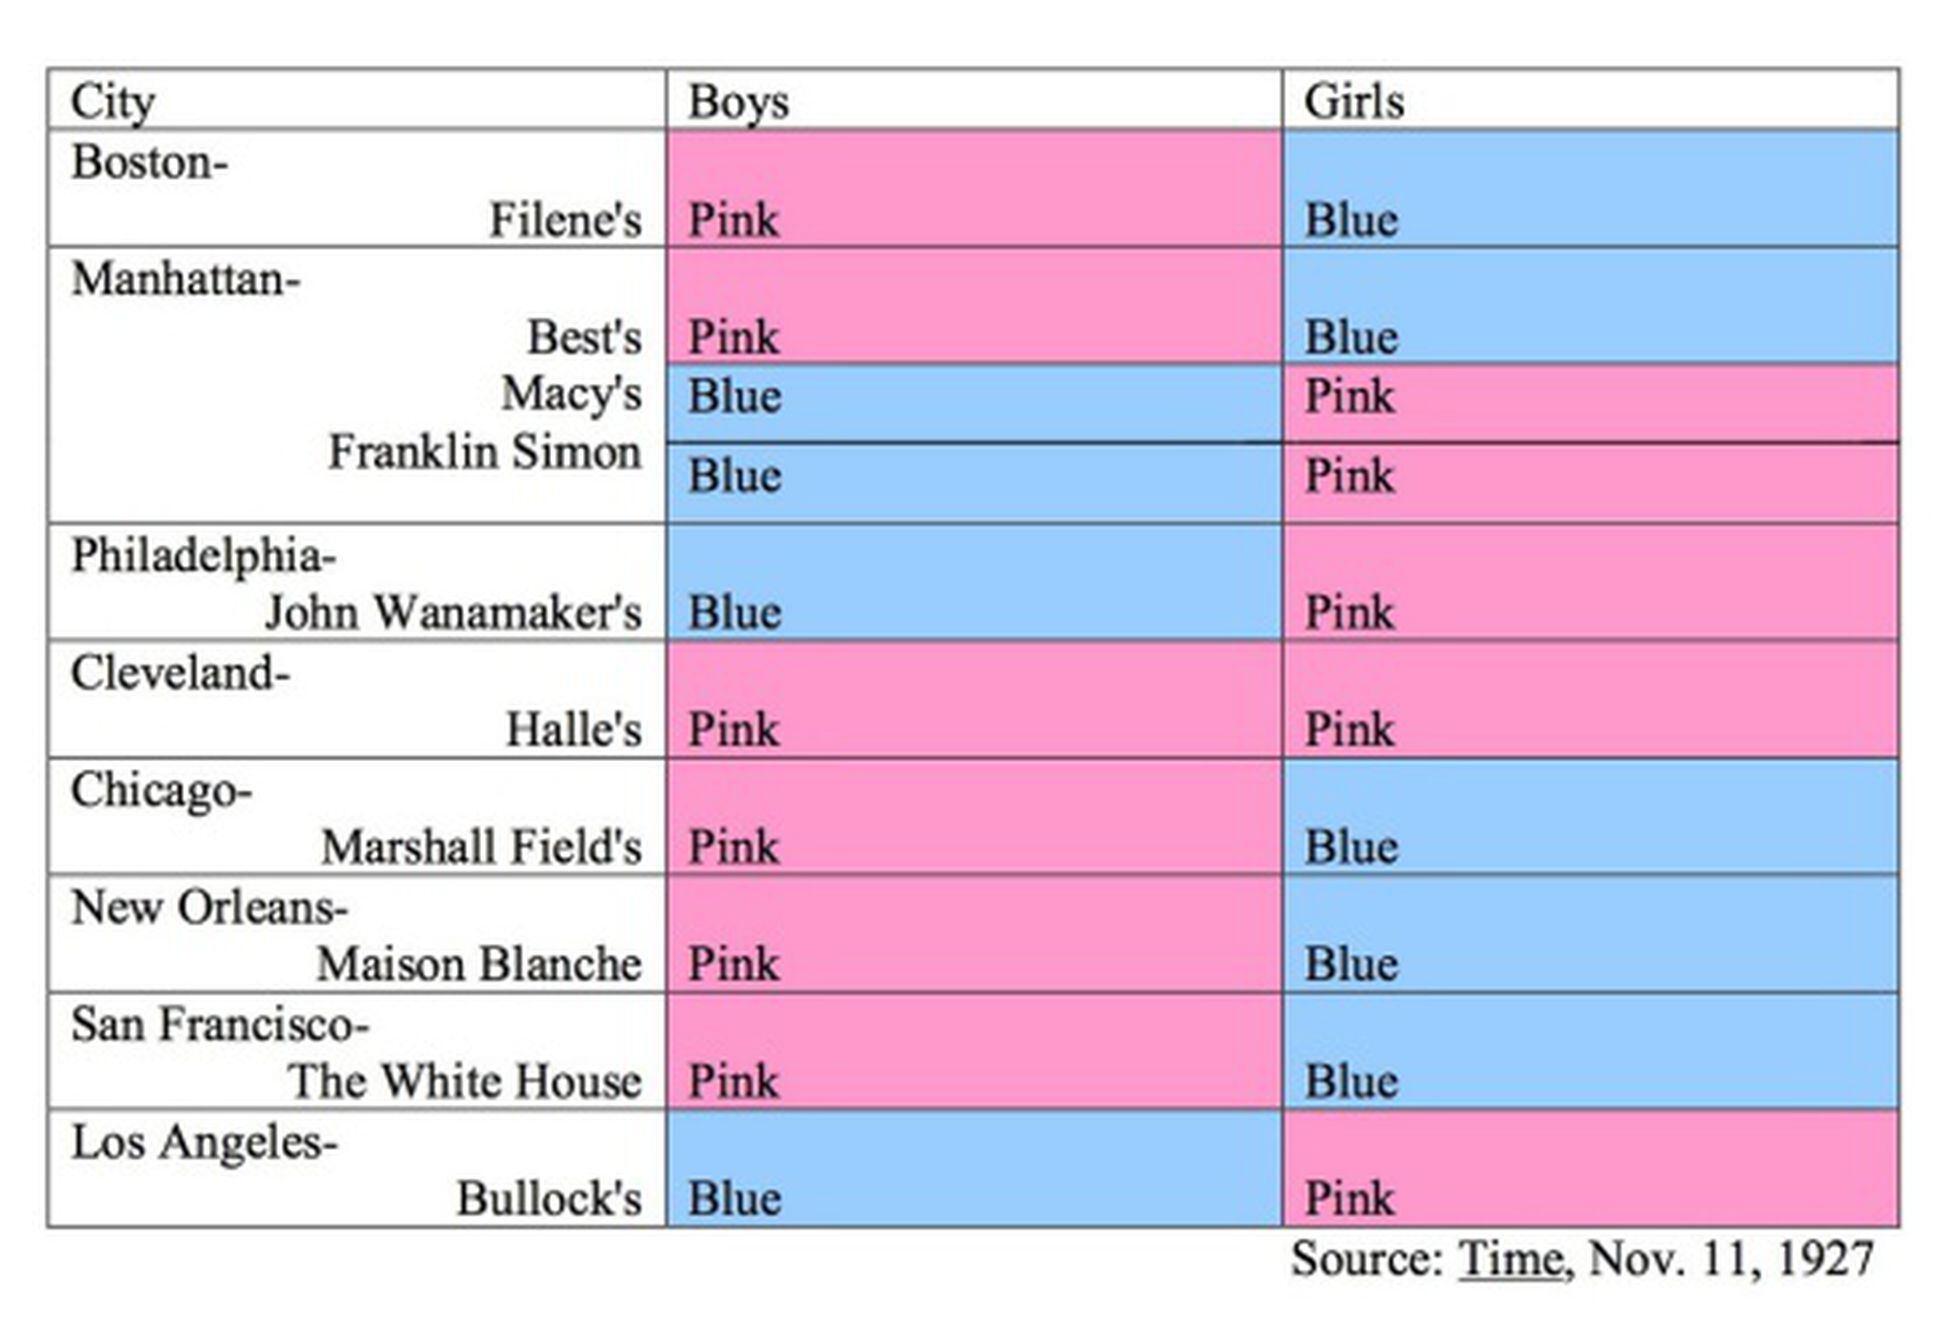 Azul é de menino, rosa é de menina” — o que as pesquisas em psicologia  dizem sobre a preferência de cores por gênero?